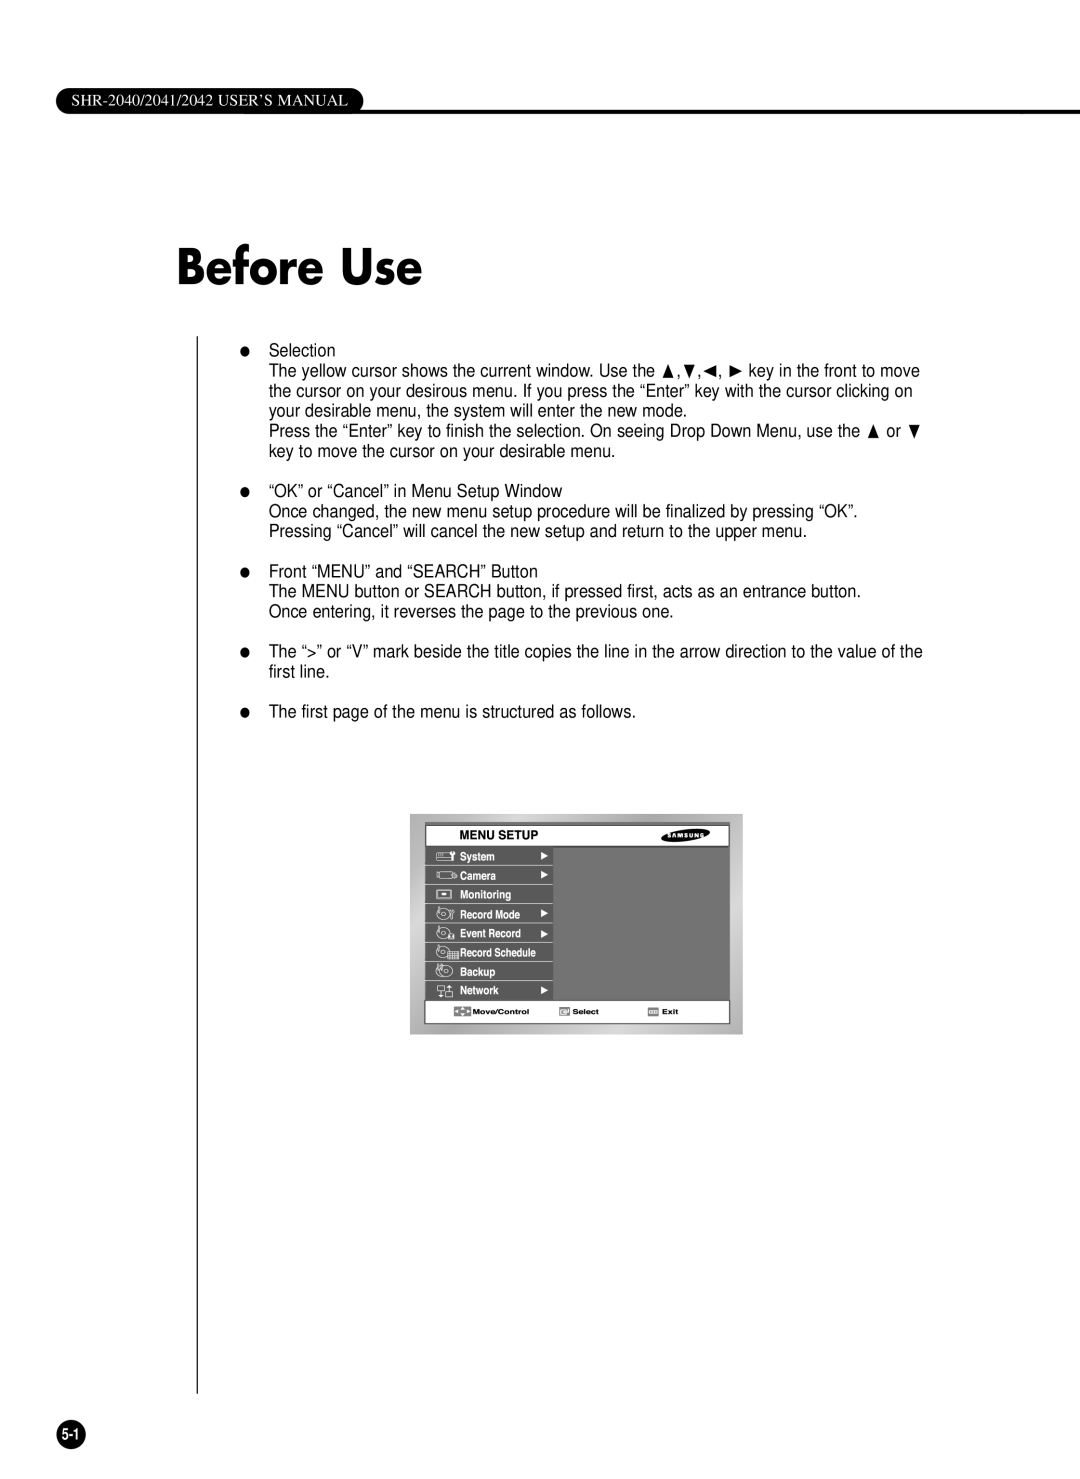 Samsung SHR-2040PX, SHR-2040P/GAR, SHR-2042P, SHR-2040P/XEC manual Before Use 